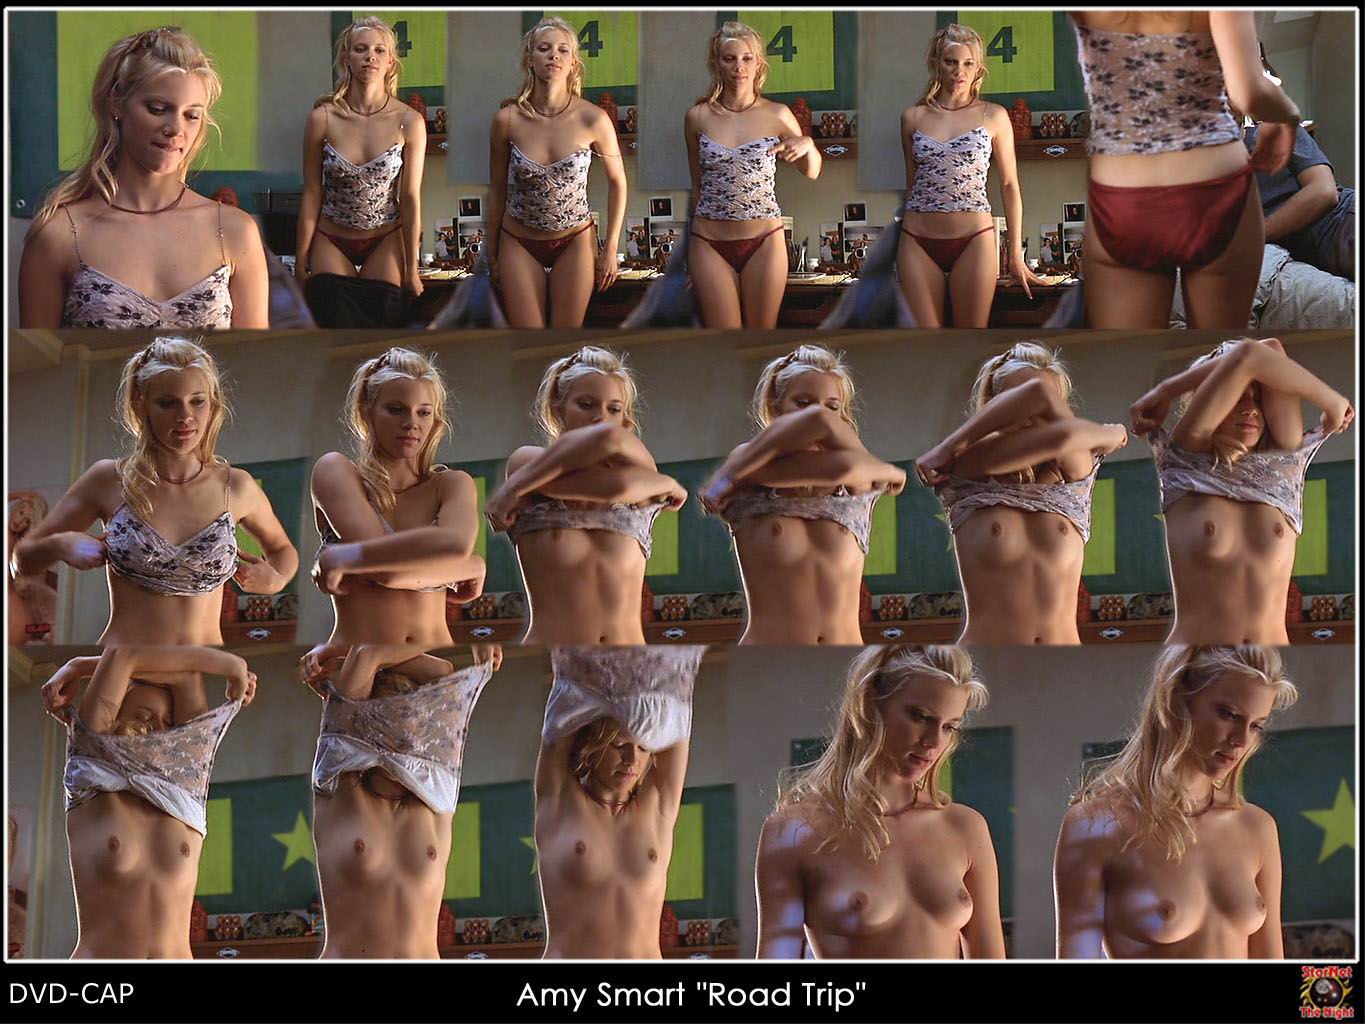 Fotos de Amy Smart desnuda - Página 7 - Fotos de Famosas.TK.